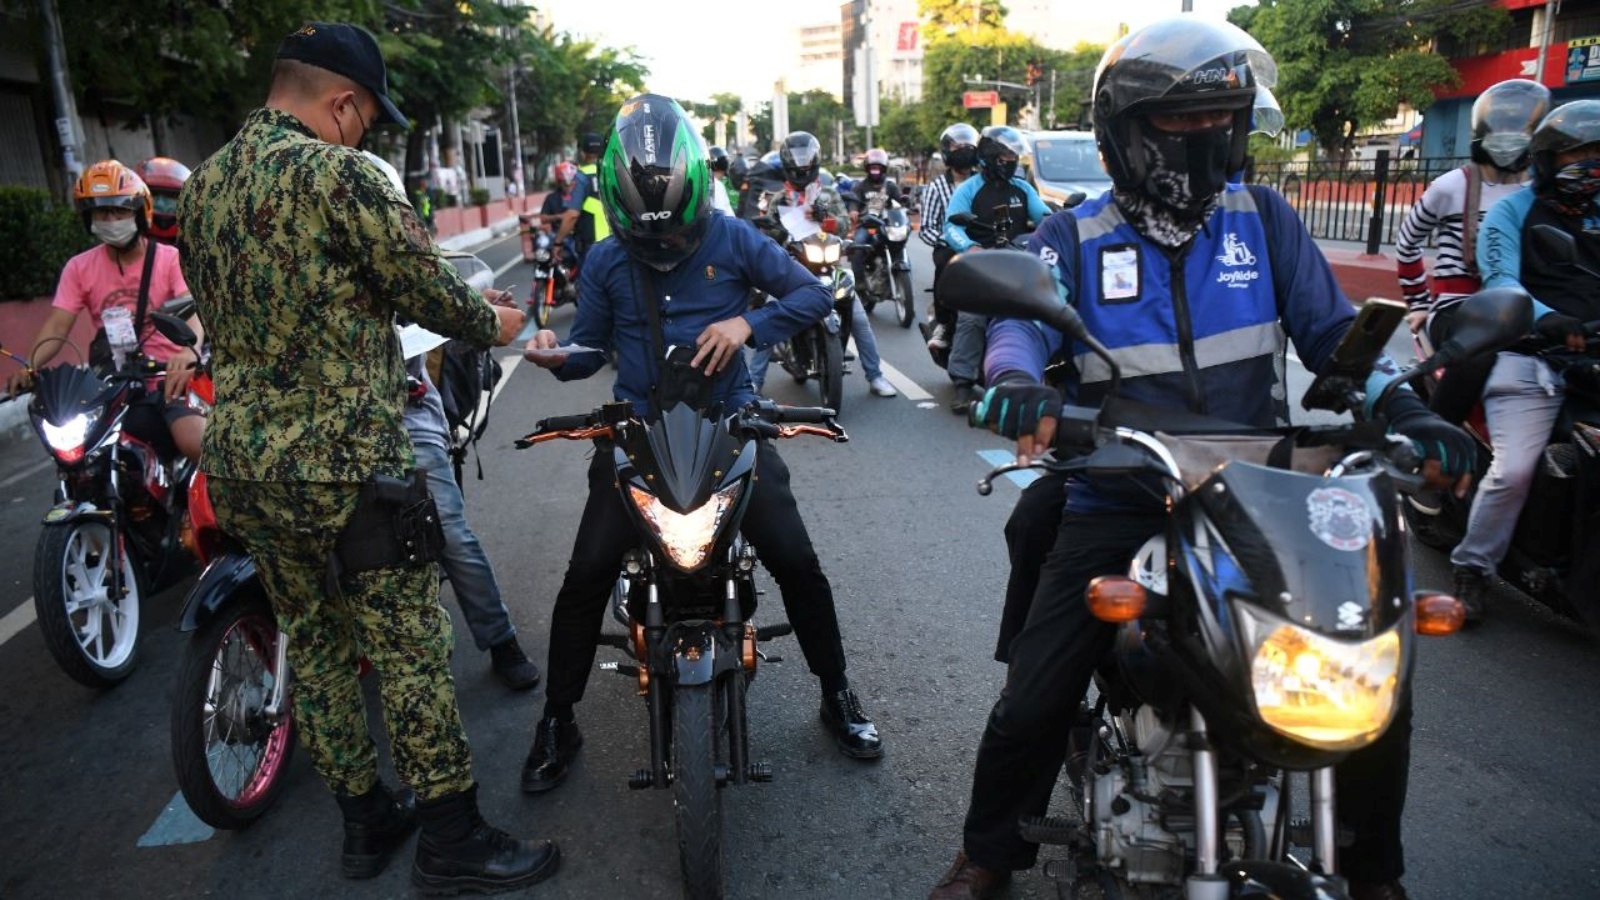 شرطي يدقّق في أوراق سائقي سيارات عند نقطة تفتيش في مانيلا 8 ايار 2022